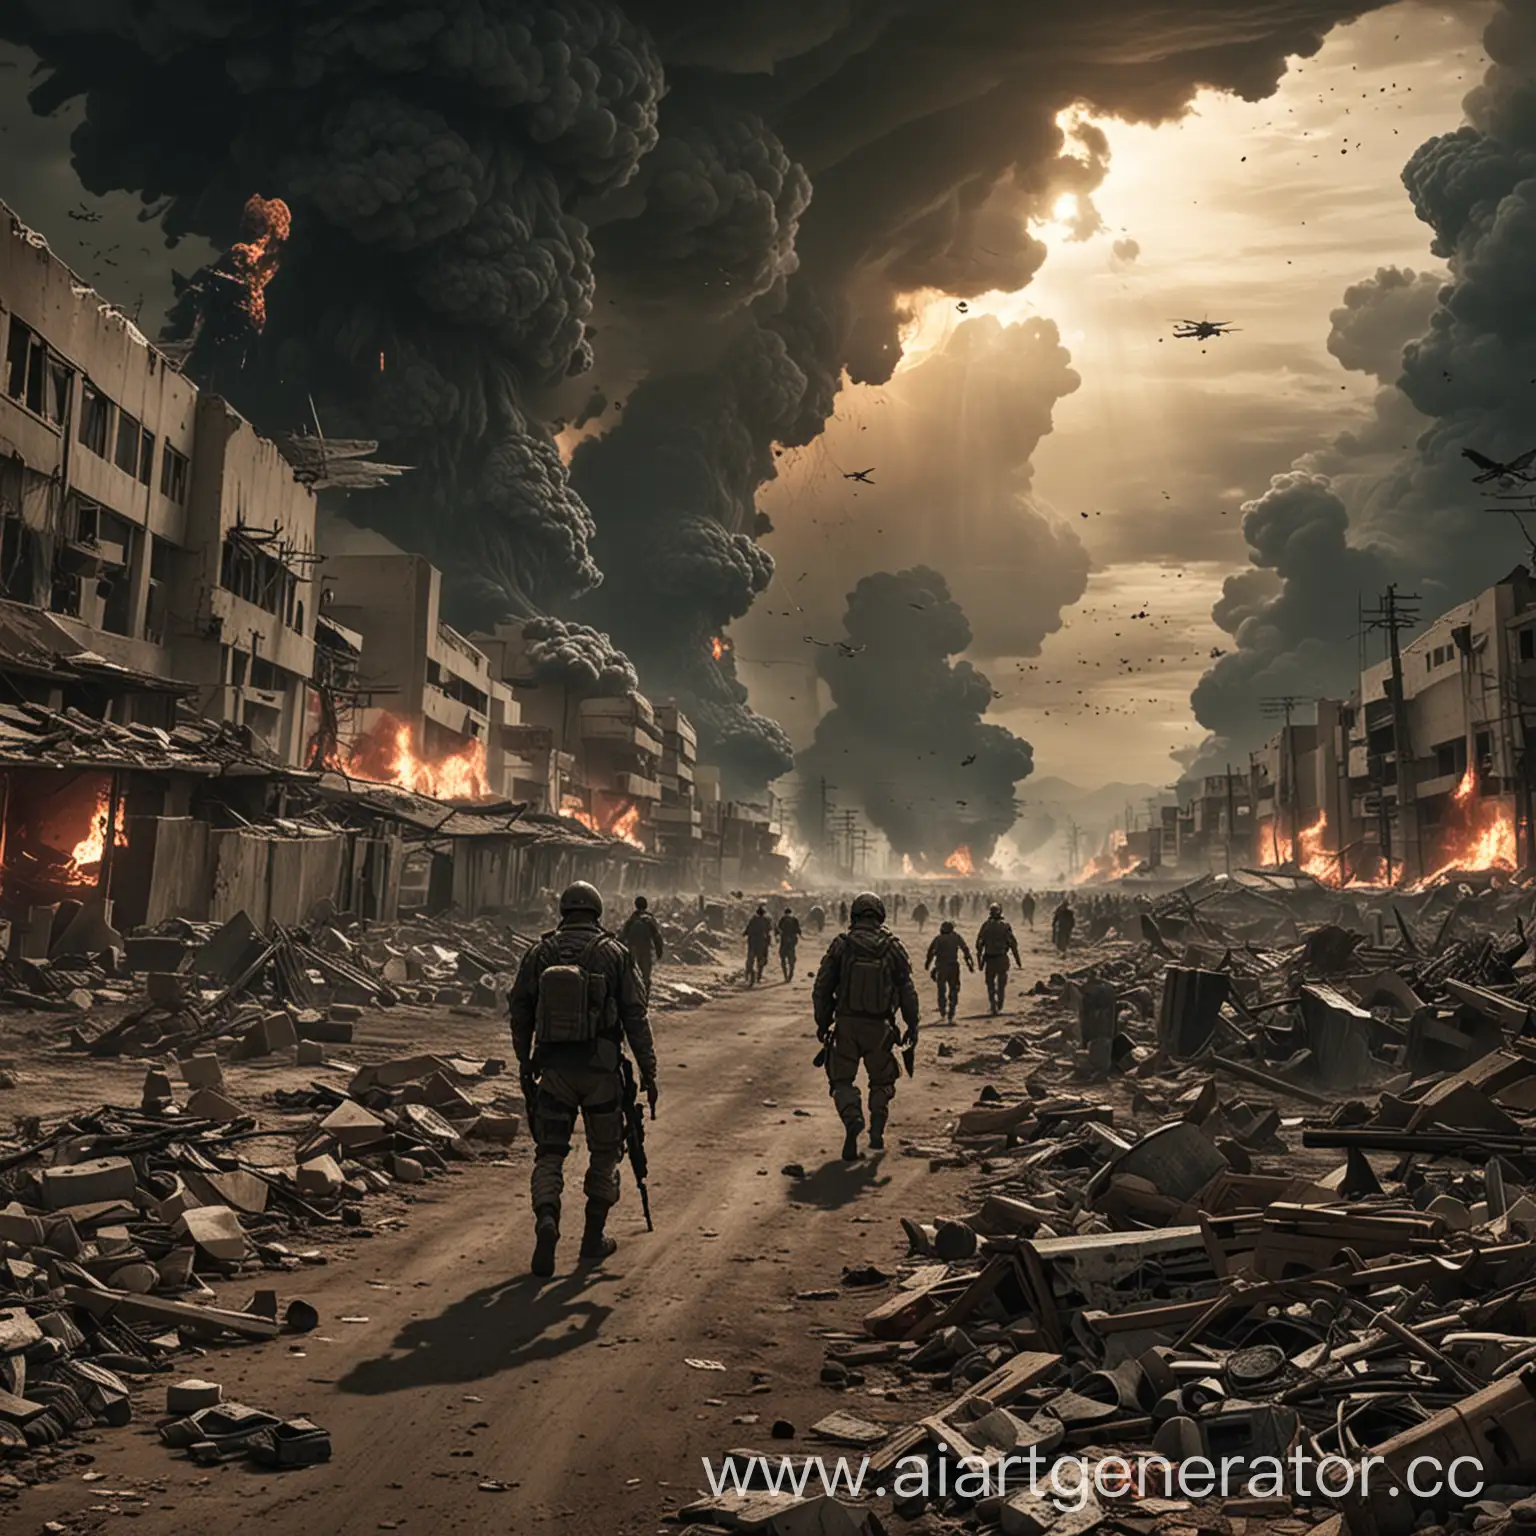 Contemporary-WarApocalypse-Scene-with-Ruined-Cityscape